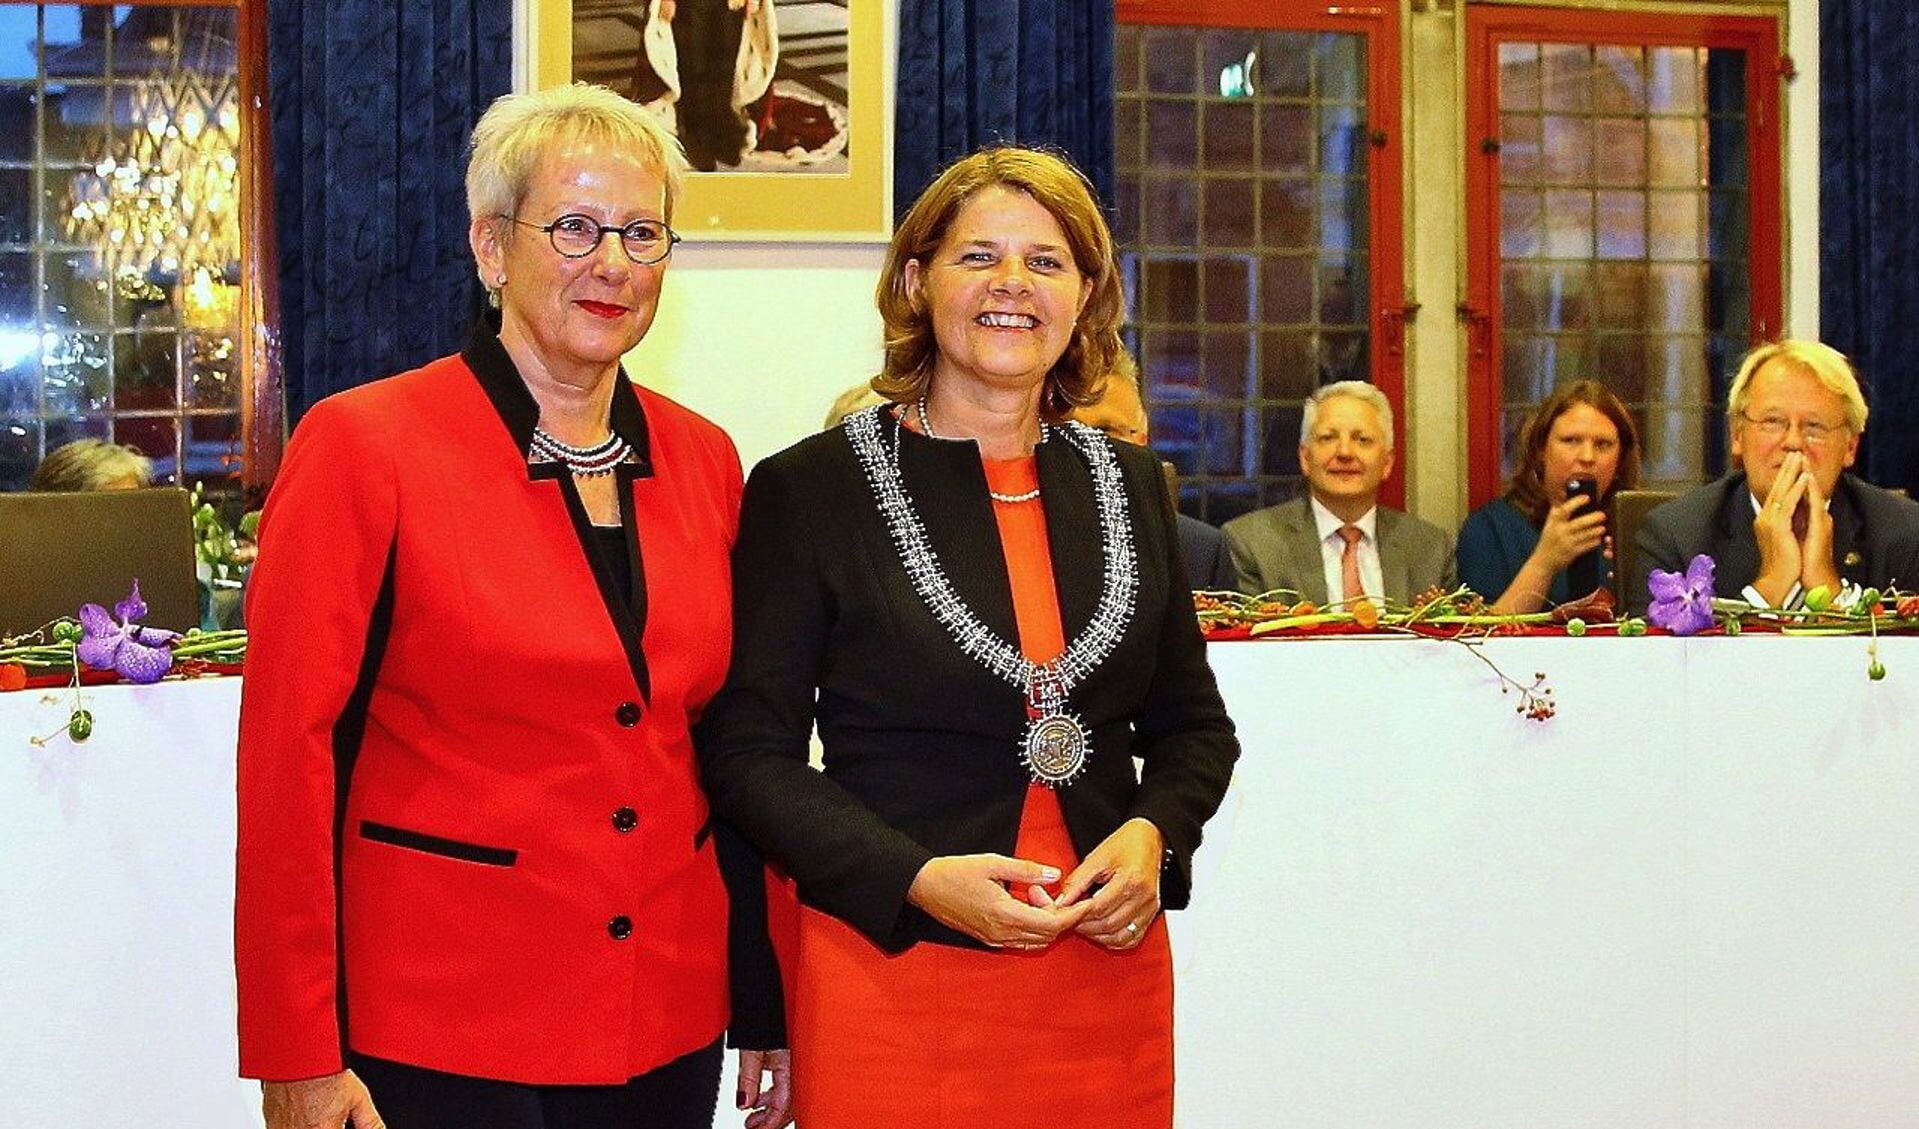 Wethouder Aletta Hekker en de kersverse burgemeester Marja van Bijsterveldt zien dat de stad Delft weer wat vlees op de botten krijgt. 